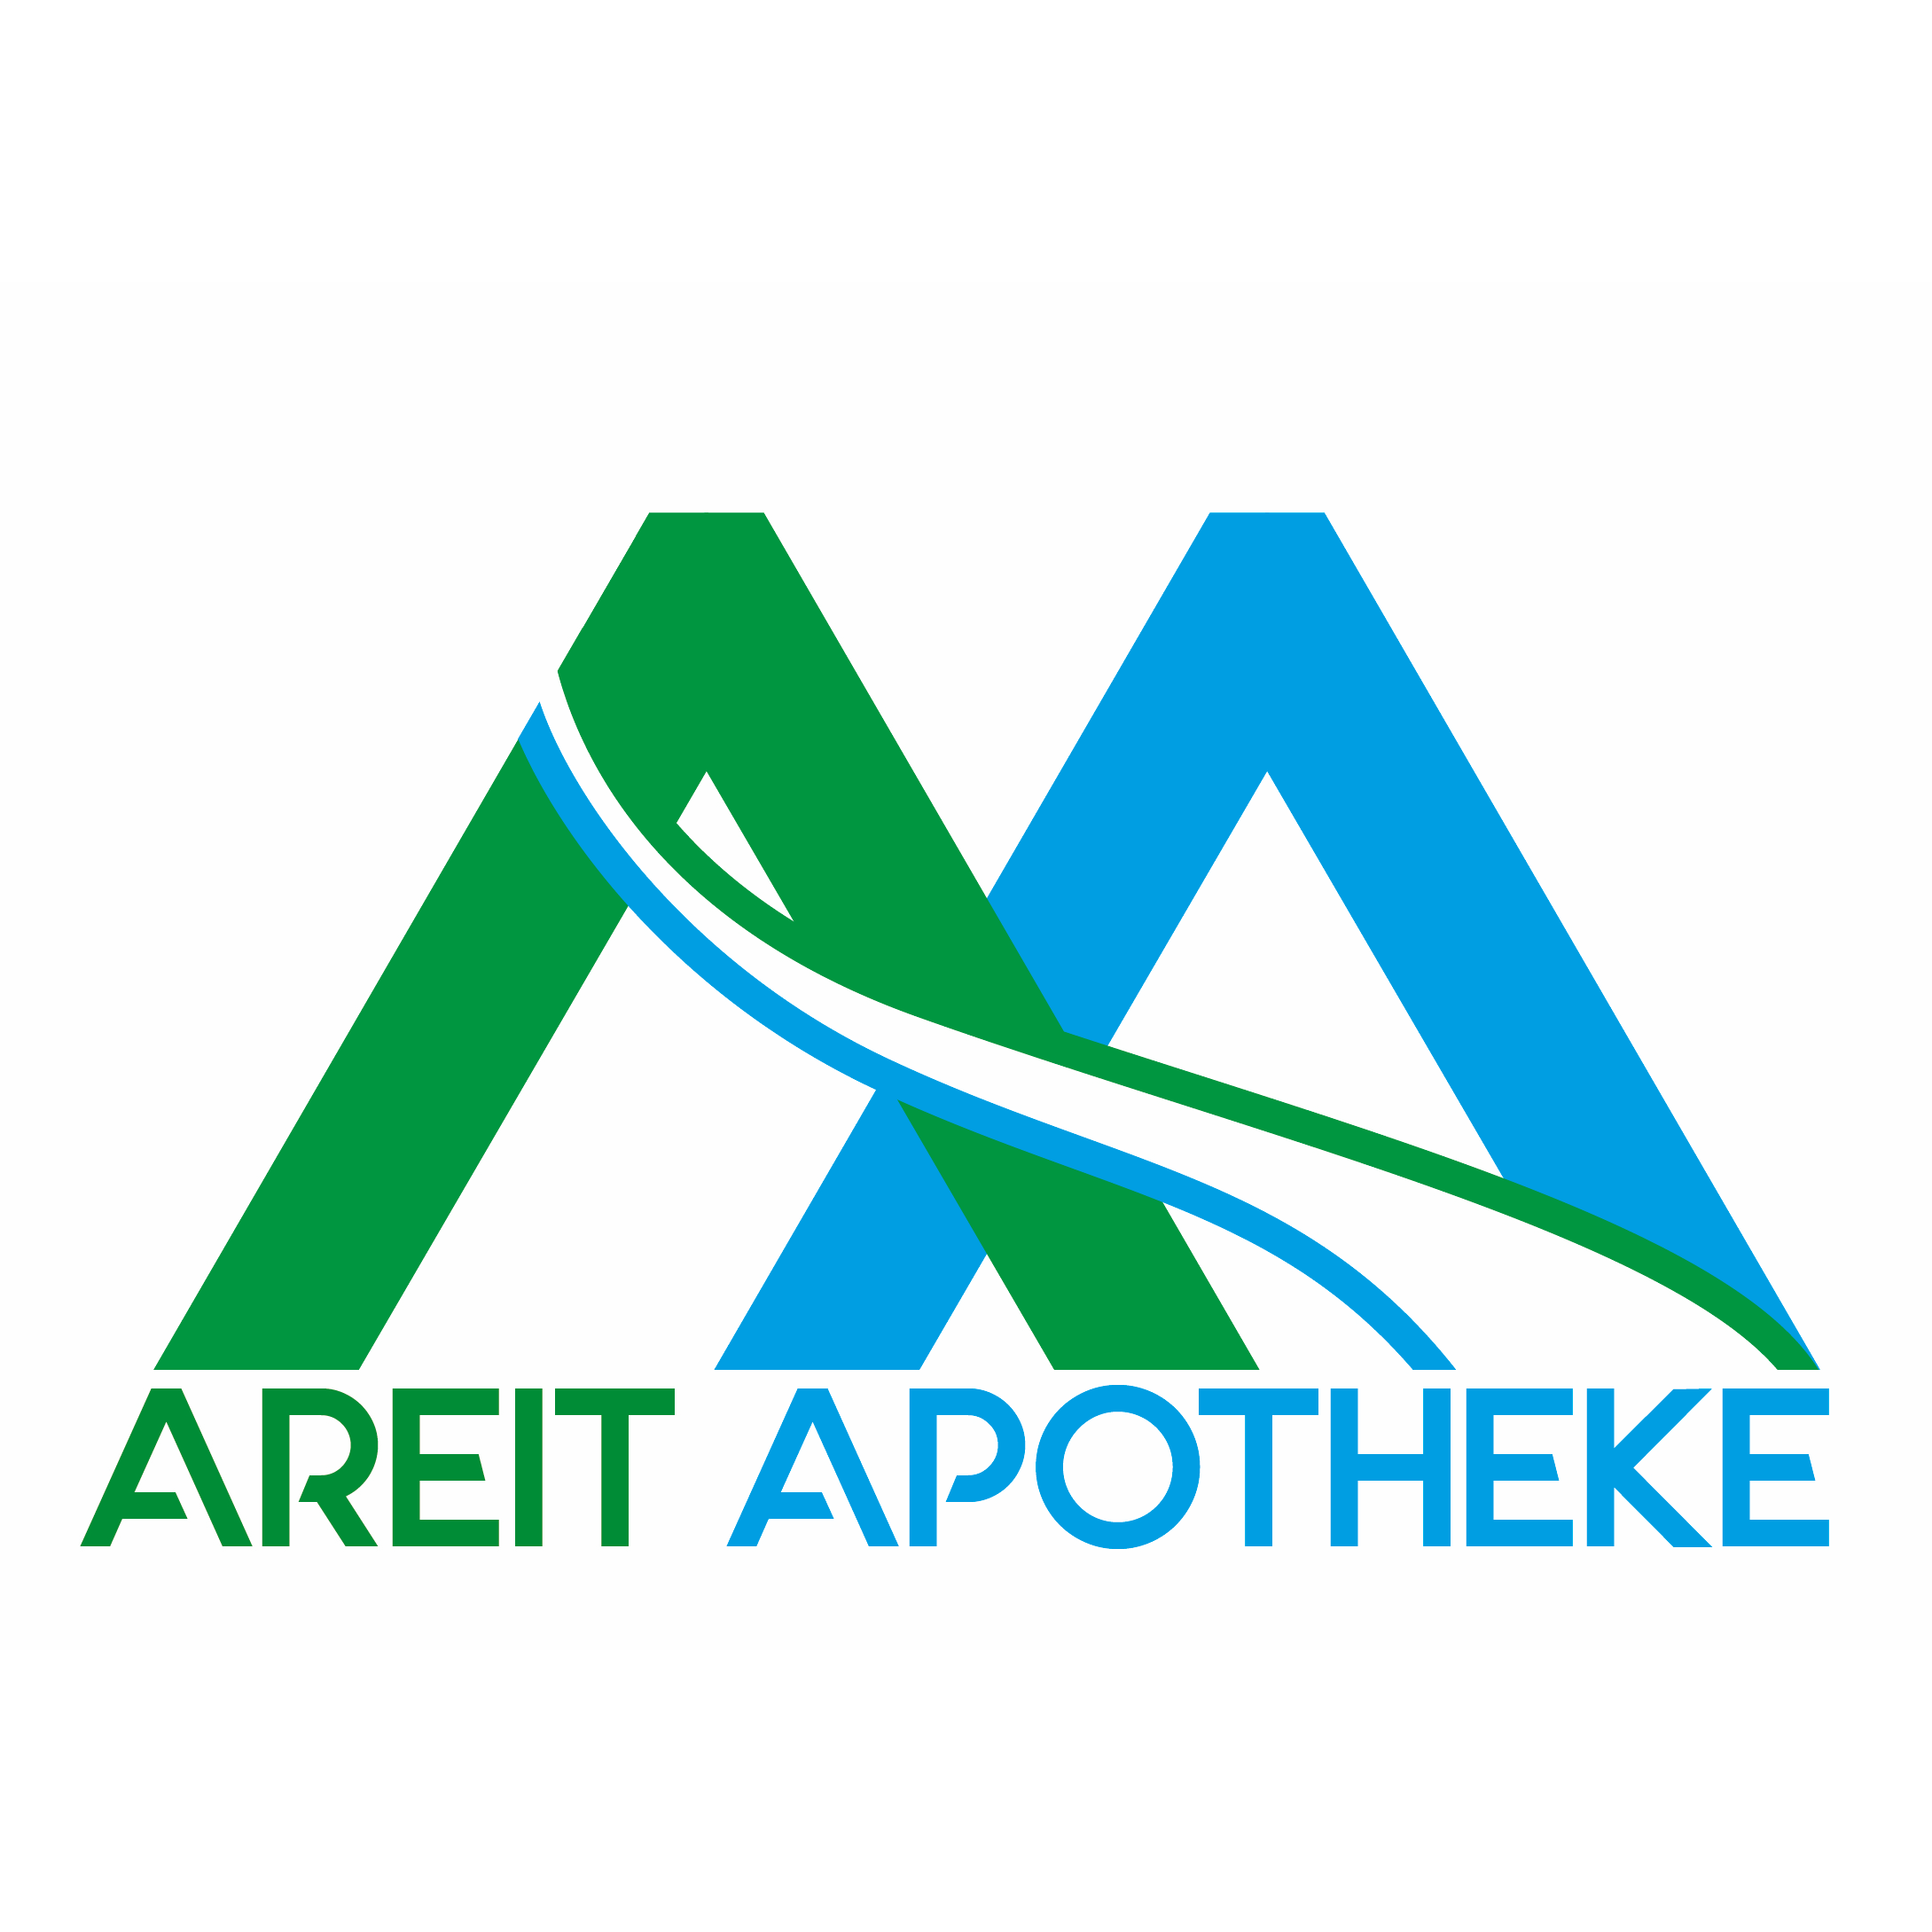 Areit Apotheke OG Logo